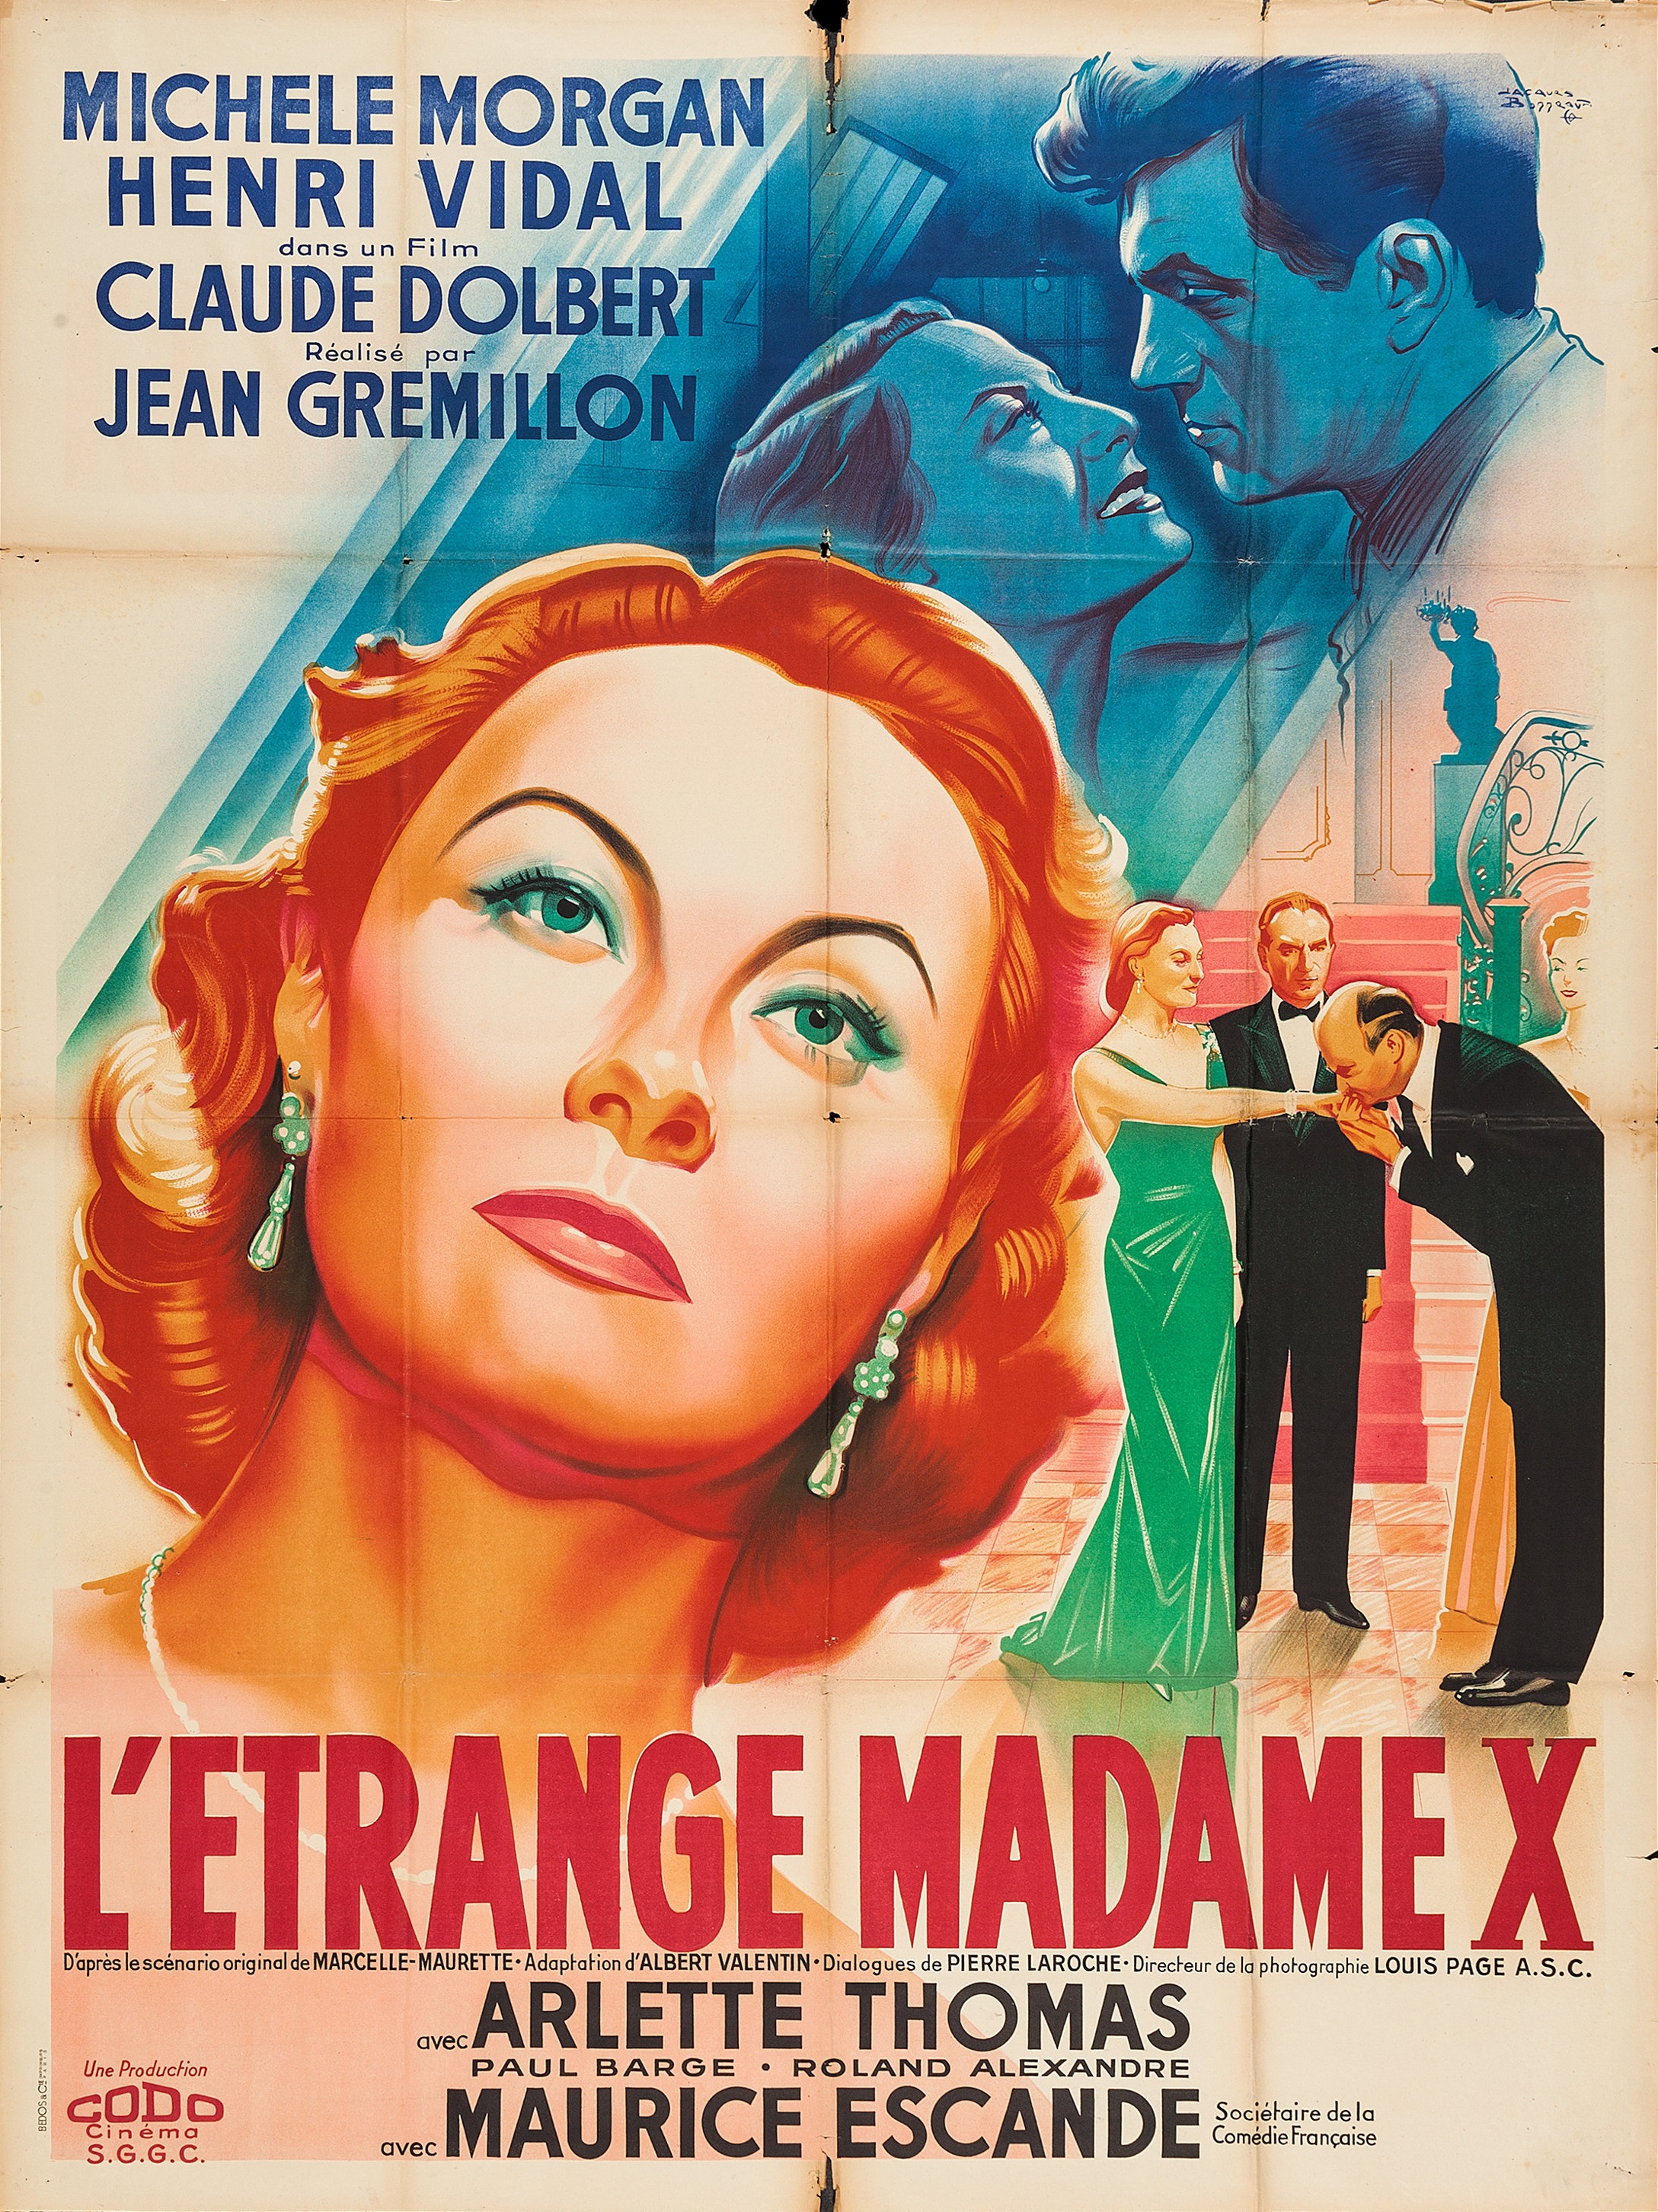 L'étrange Madame X